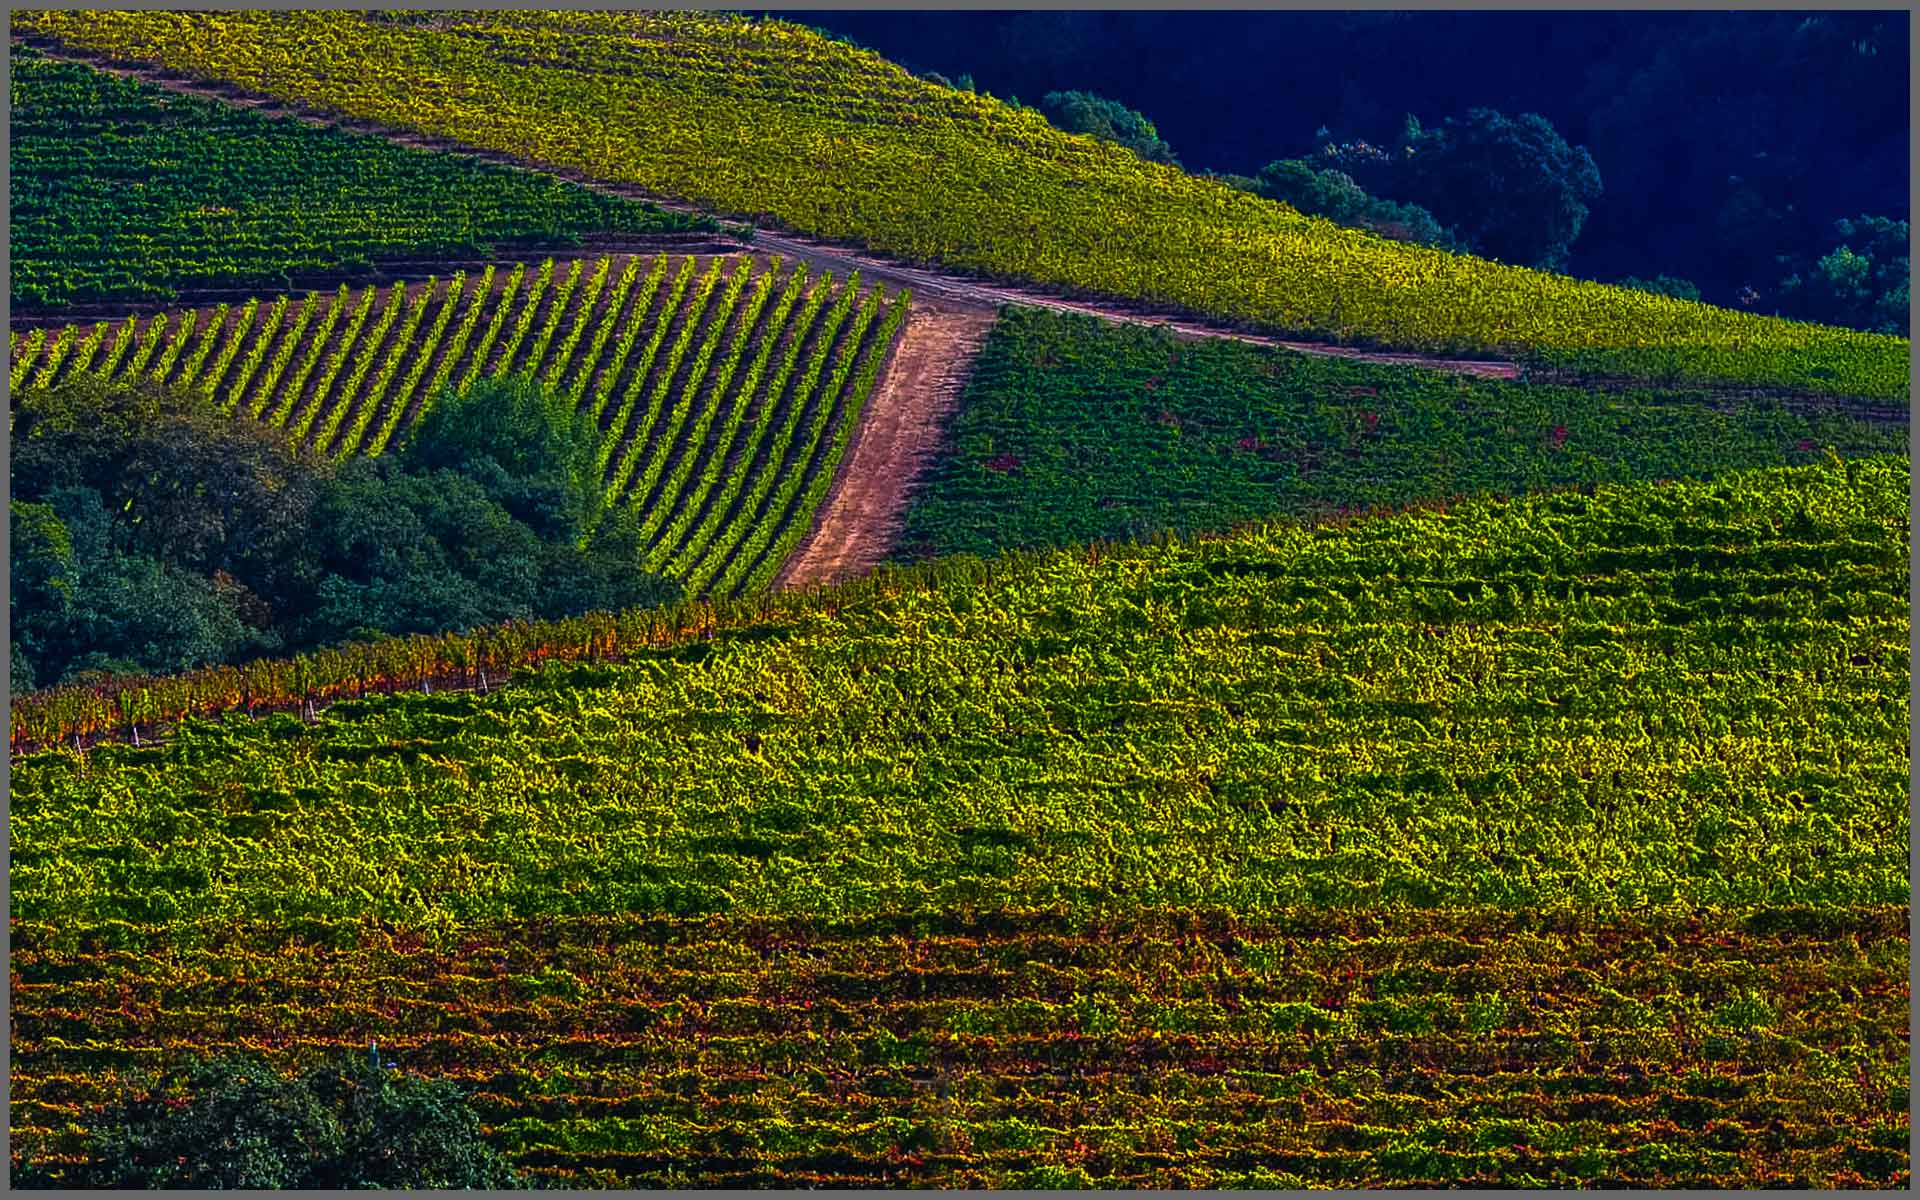 Vineyards/Wineries